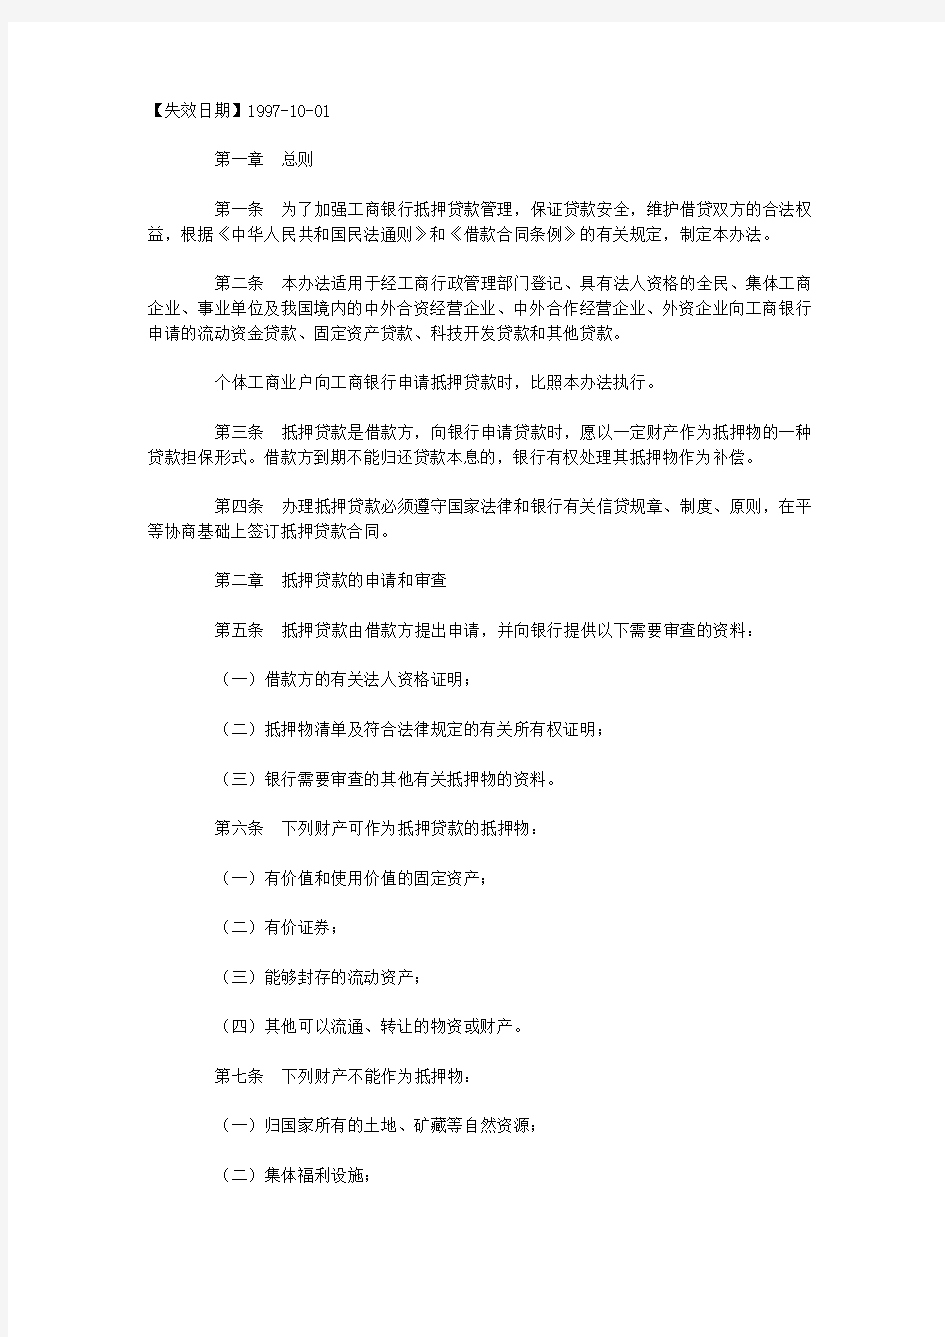 中国工商银行抵押贷款管理暂行办法